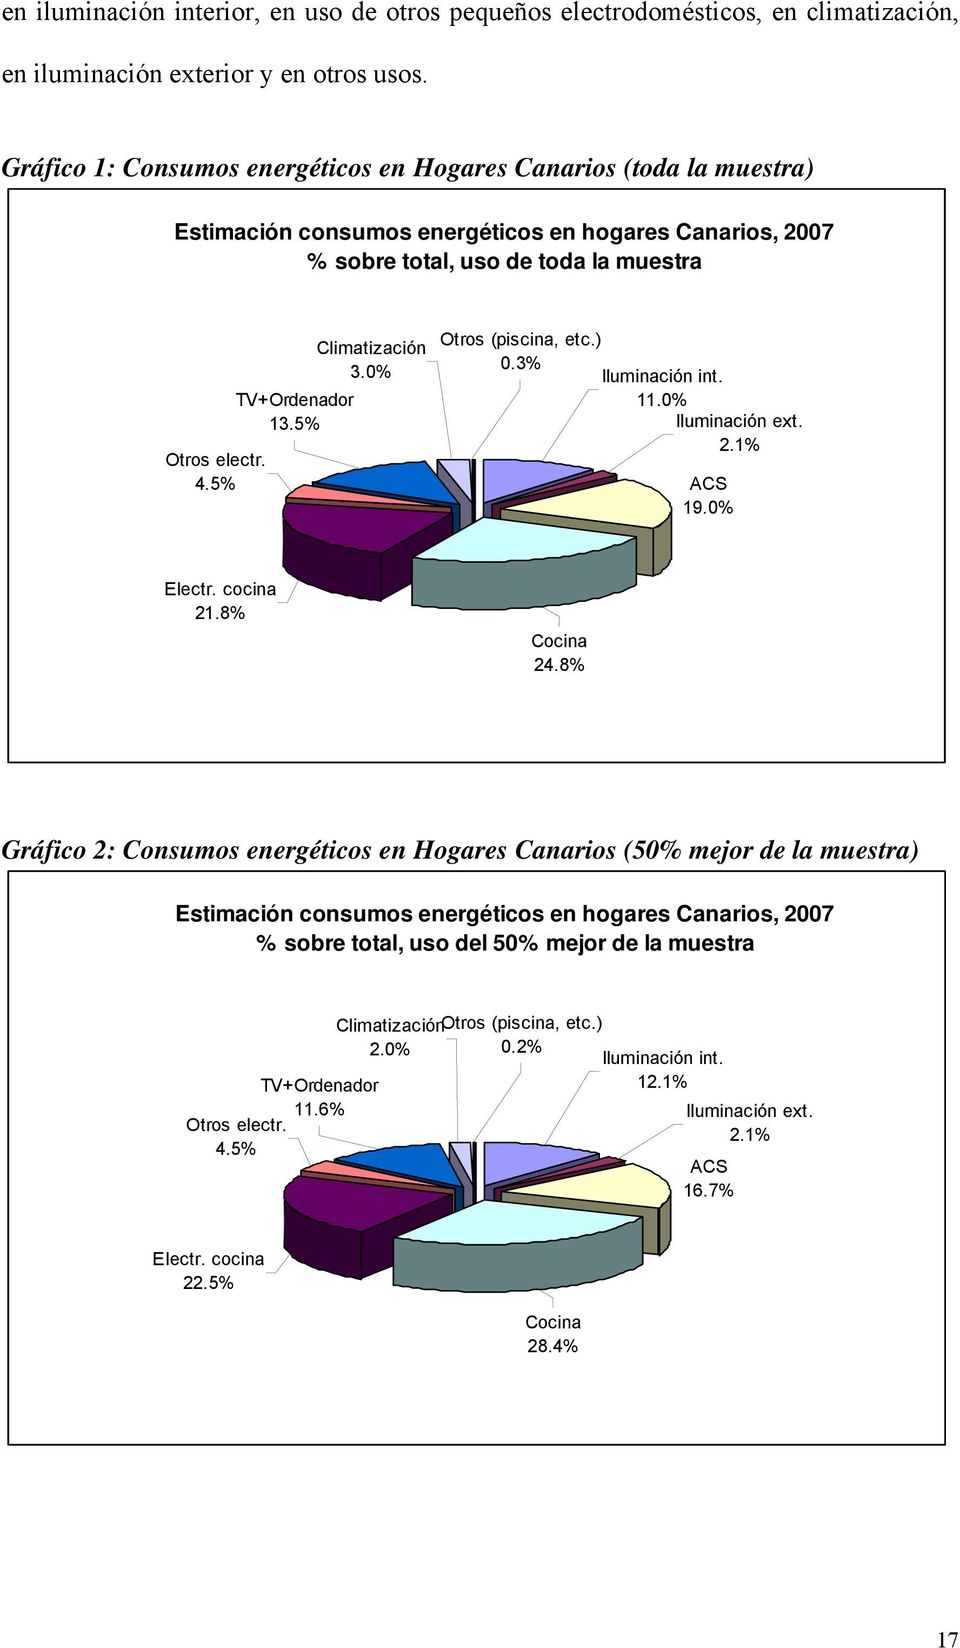 5% TV+Ordenador Climatización 3.0% Otros (piscina, etc.) 0.3% Iluminación int. 11.0% 13.5% Iluminación ext. 2.1% ACS 19.0% Electr. cocina 21.8% Cocina 24.